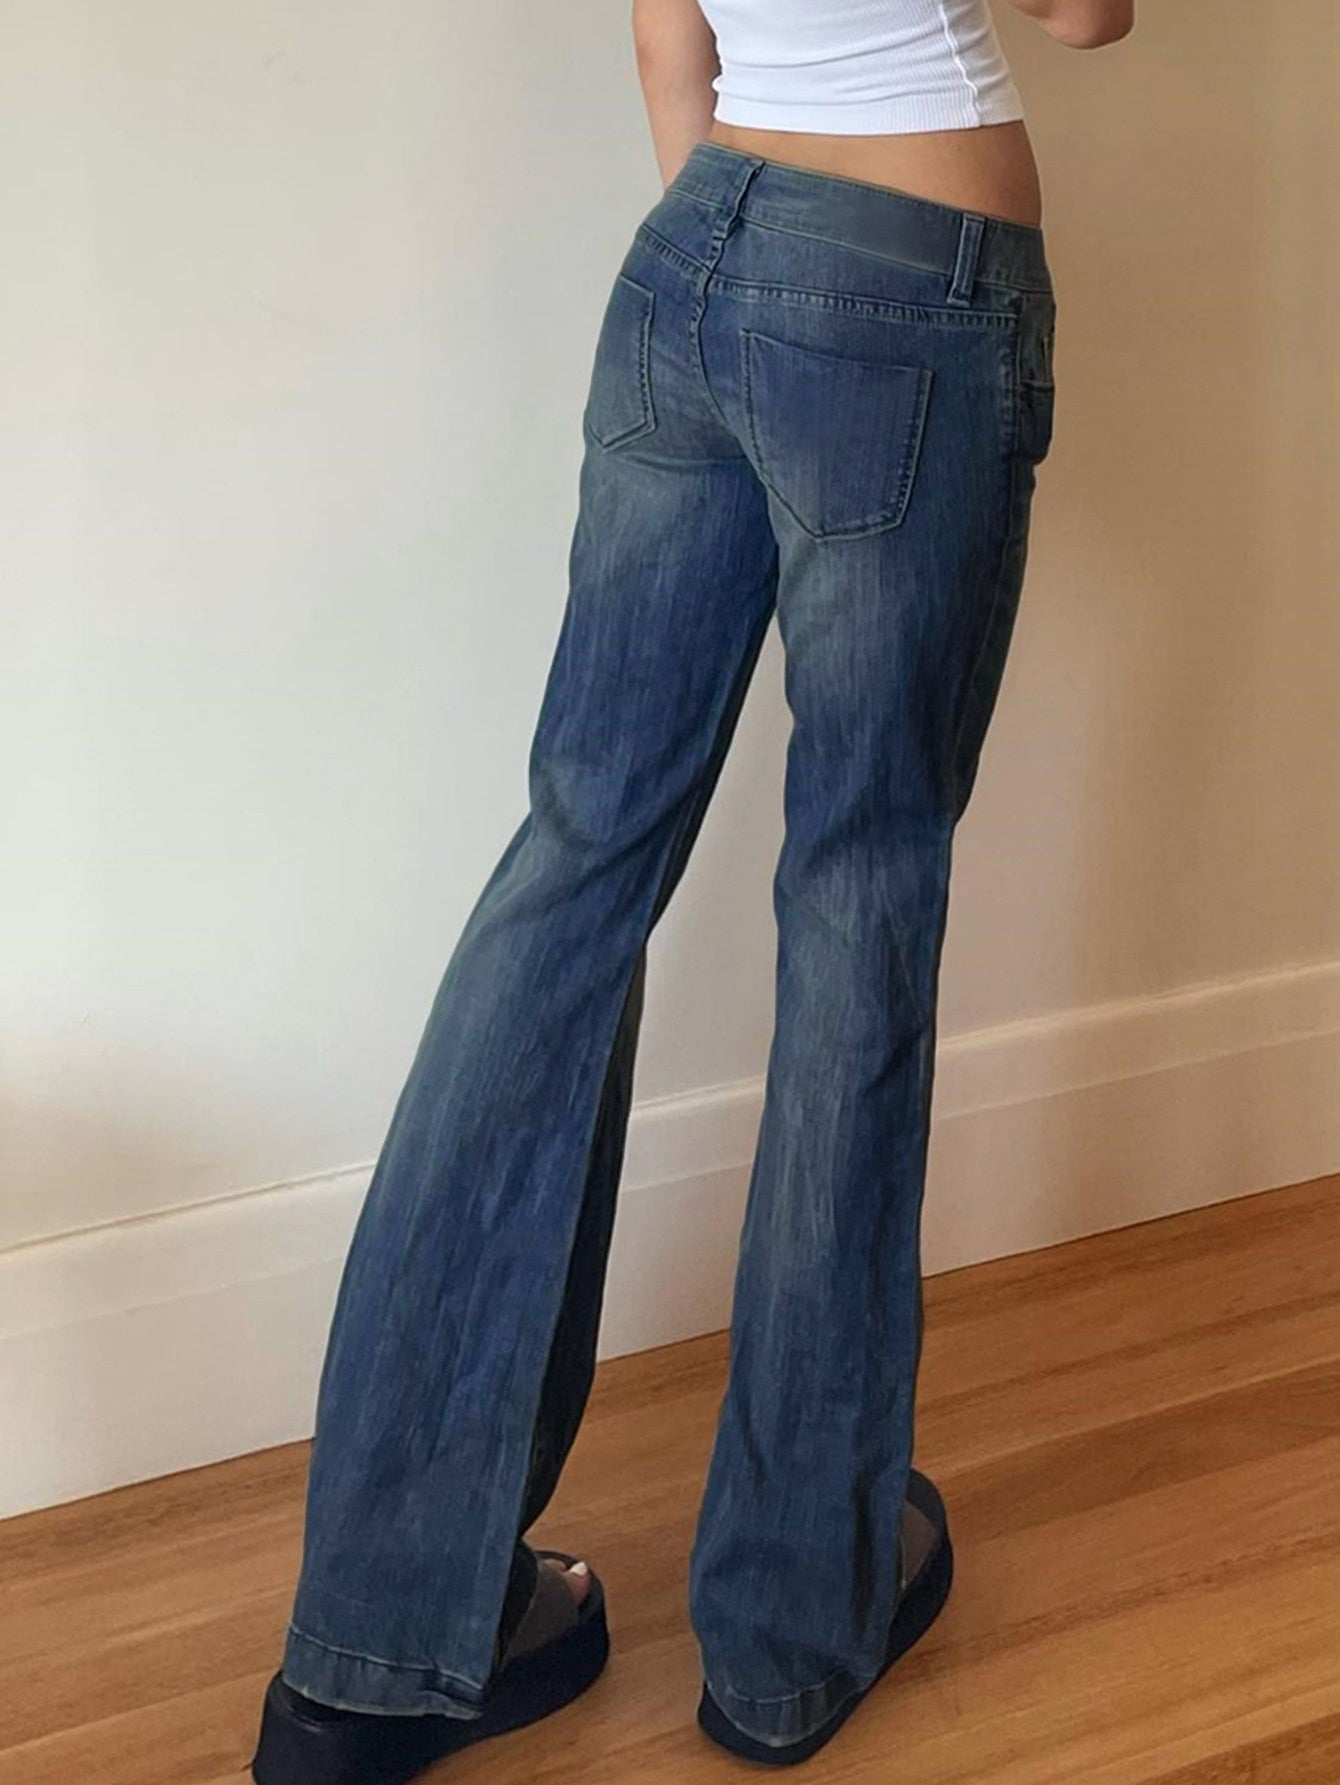 Lizakosht Vintage Street Jeans Women Fashion 90s Y2K Streetwear Low Waist Casual Denim Baggy Sexy Aesthetics Wide Leg Straight Trousers